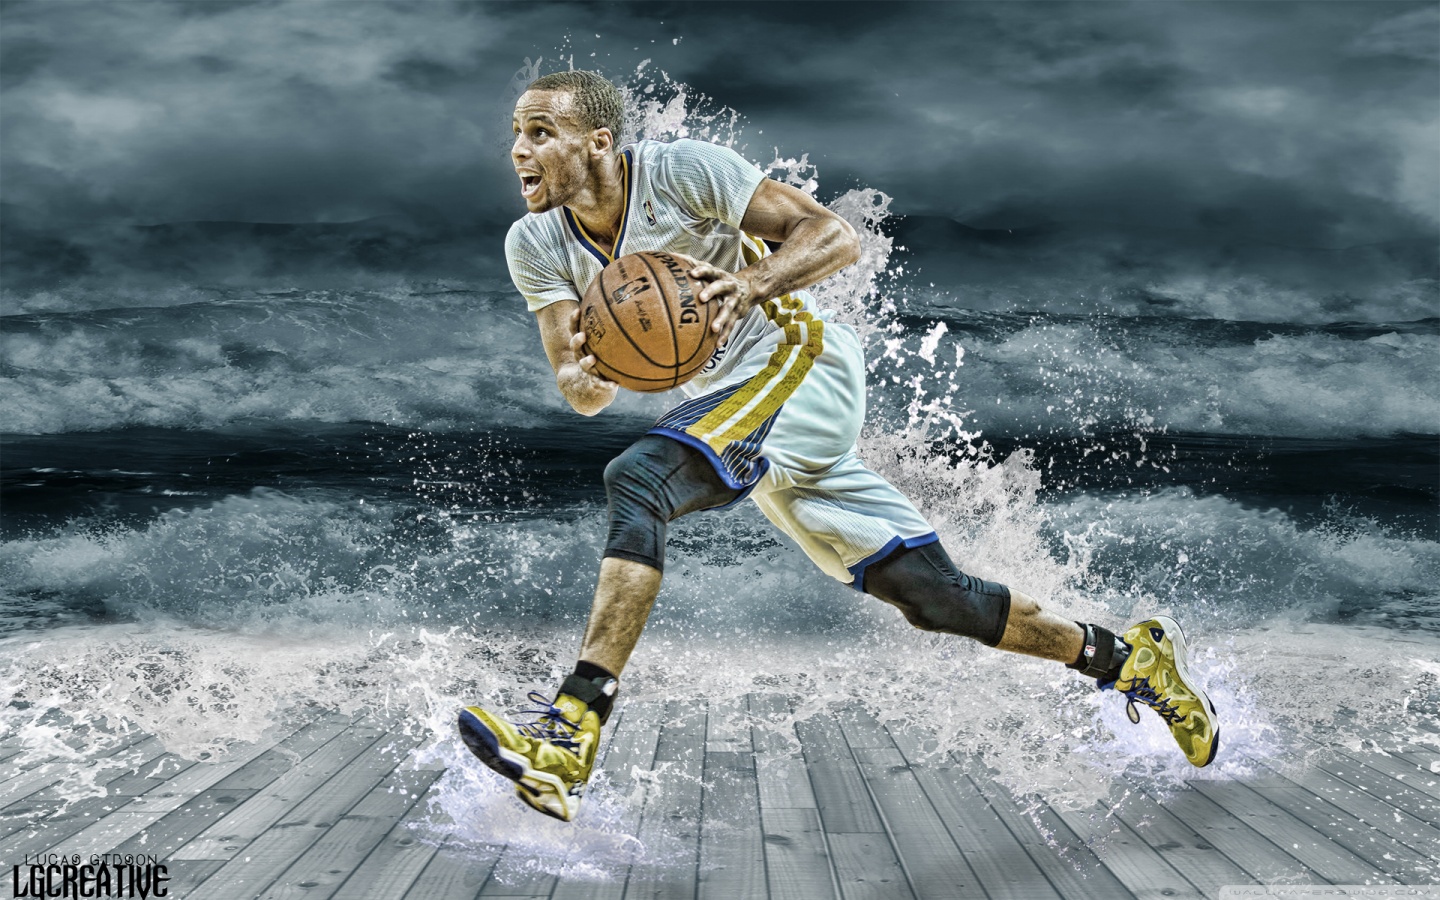 Wallpaper 4k Stephen Curry Basketball Player Wallpaper